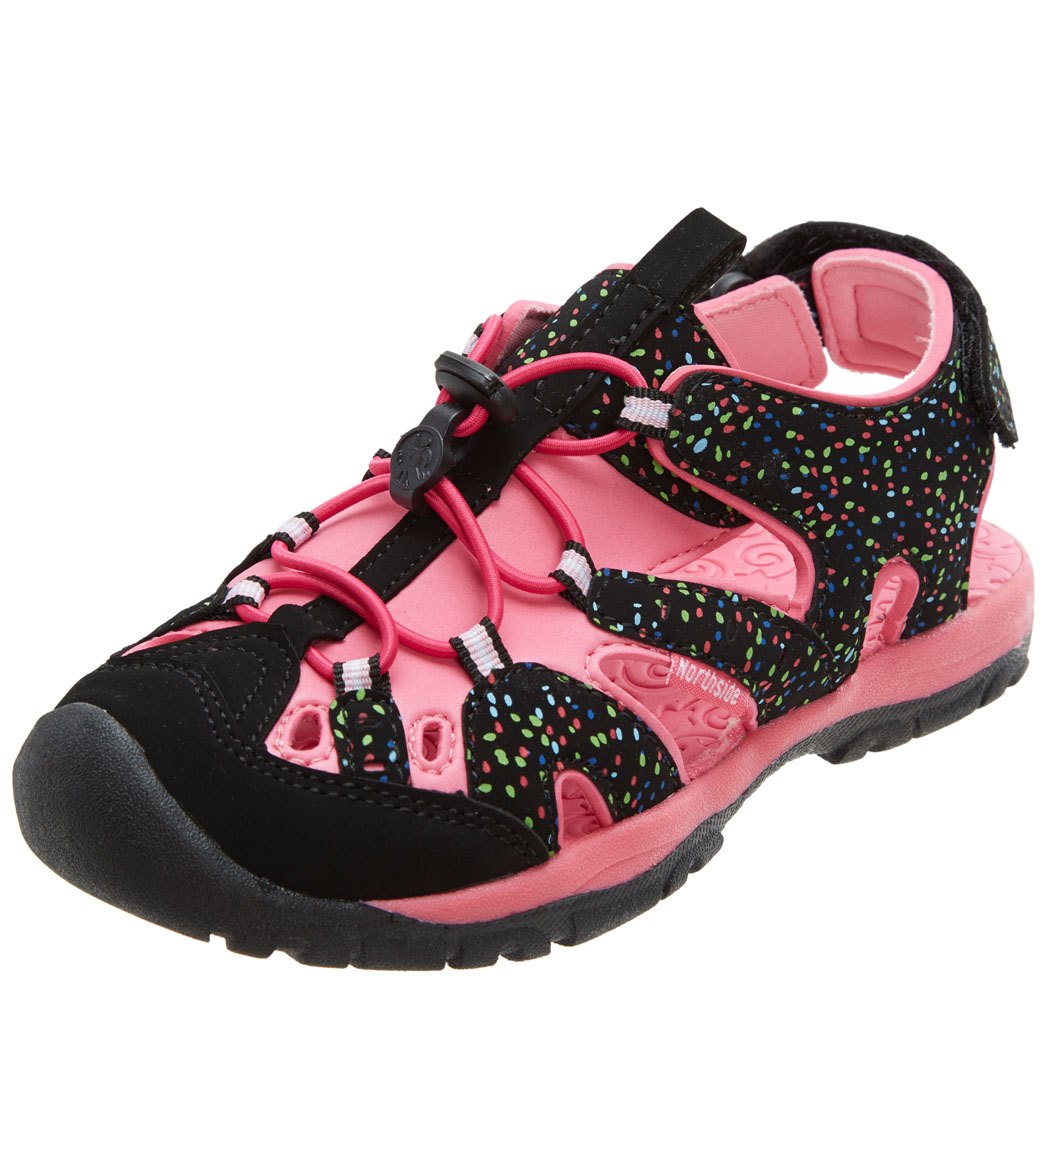 Northside Girls' Burke Se Sport Sandals Toddler//Big Kid - Black/Fuchsia 12 Faux-Suede - Swimoutlet.com